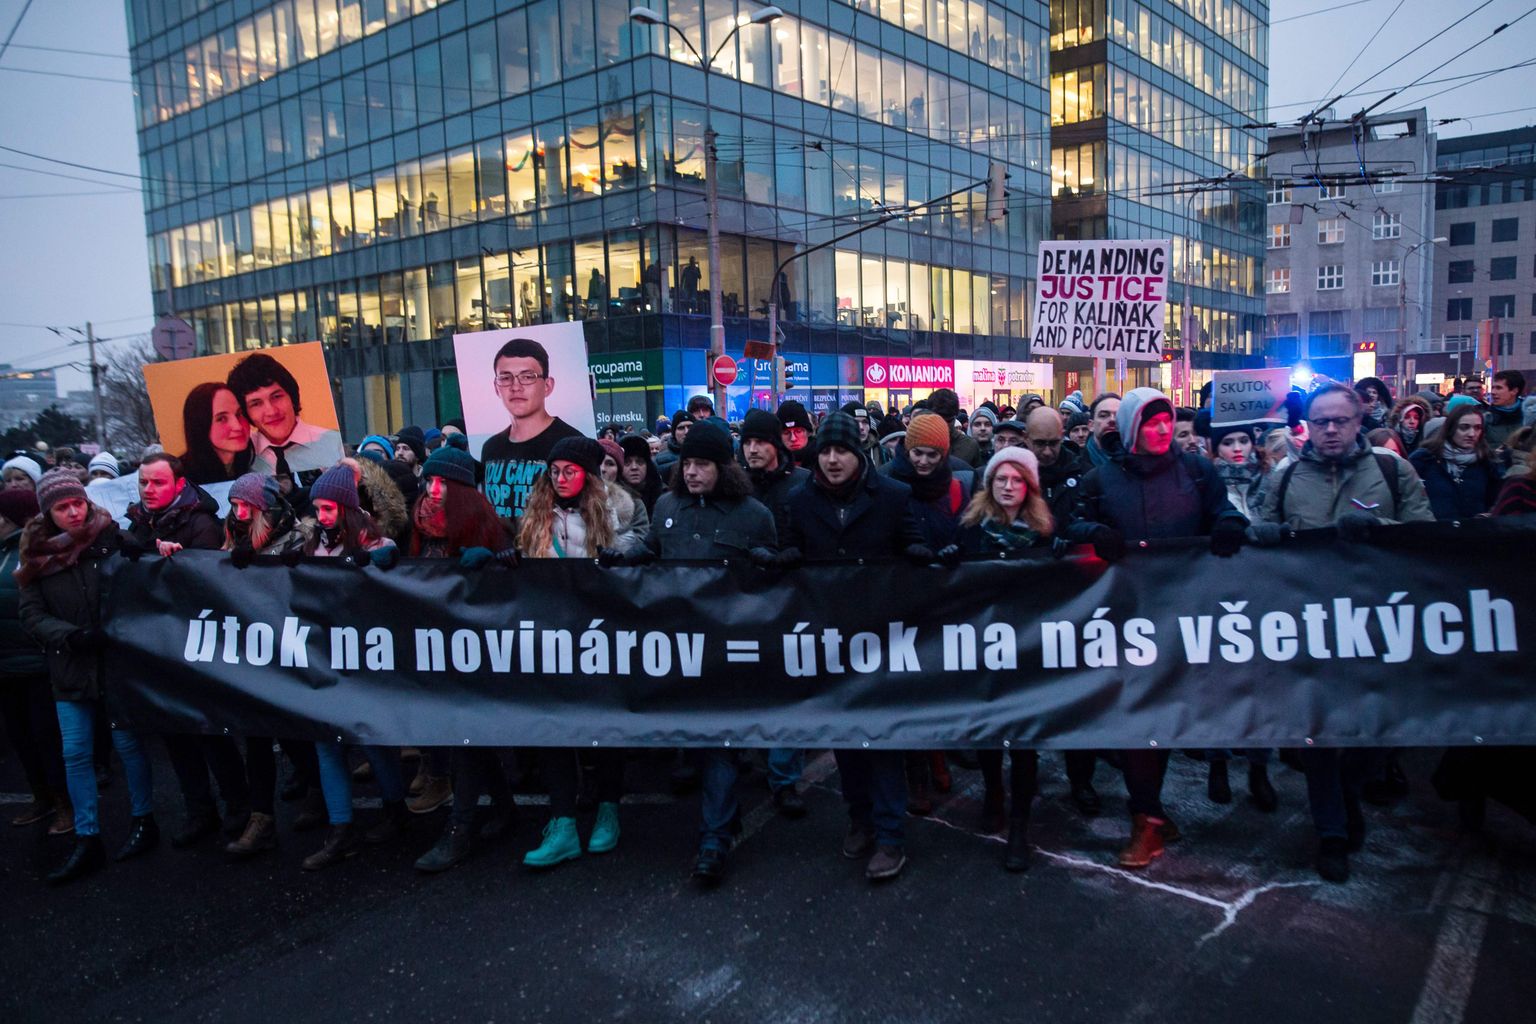 Reedel Bratislavas toimunud protestimarss. Inimesed hoidmas plakatit, kus seisab: "Ajakirjaniku ründamine = meie kõigi ründamine".